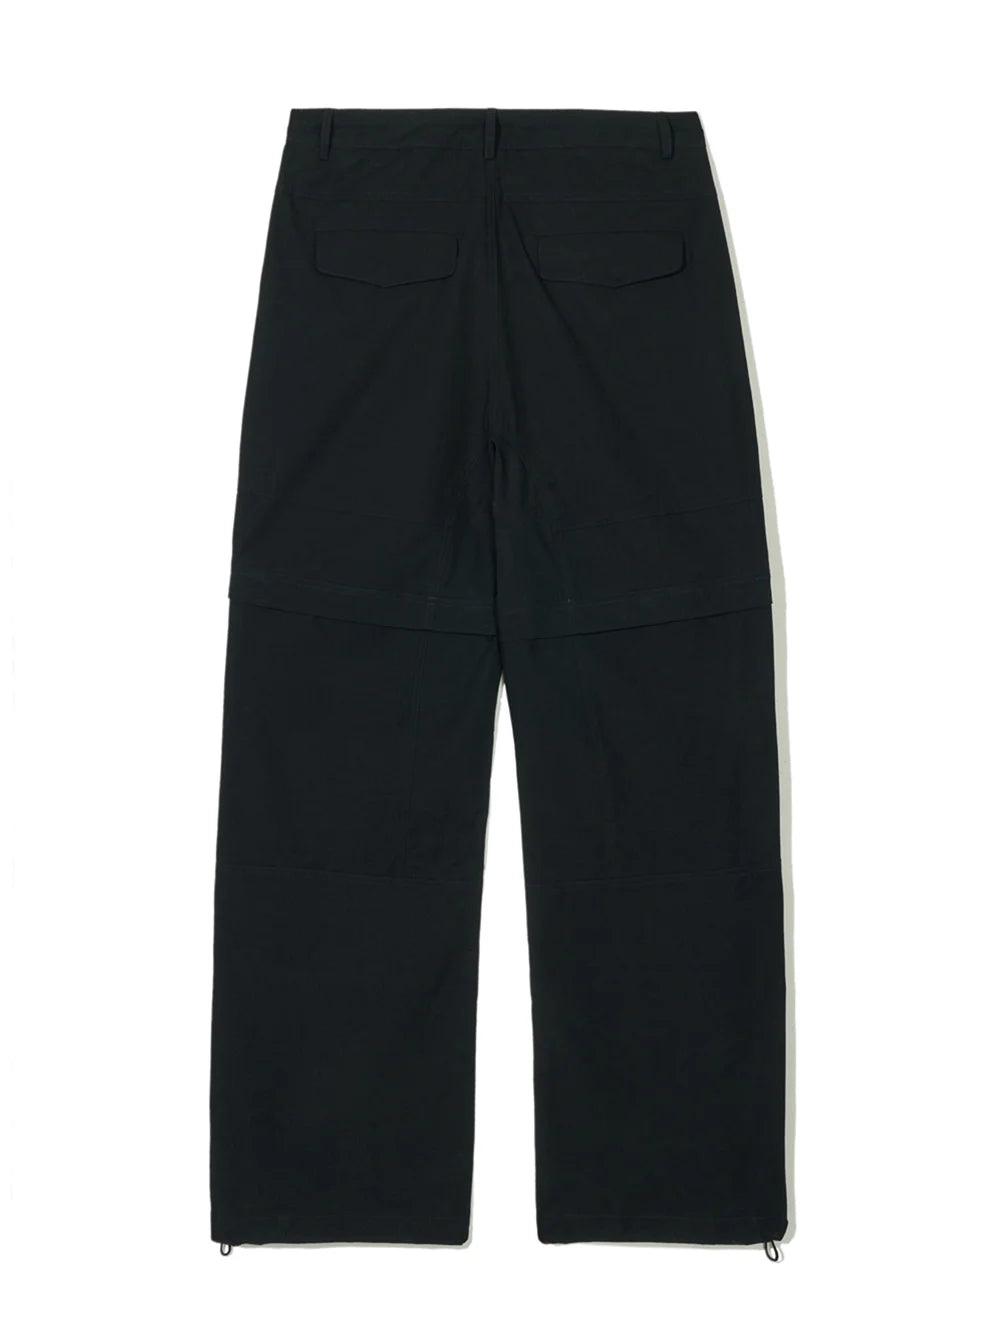 Partimento Detachable Zipper Parachute Pants - Black - Pants